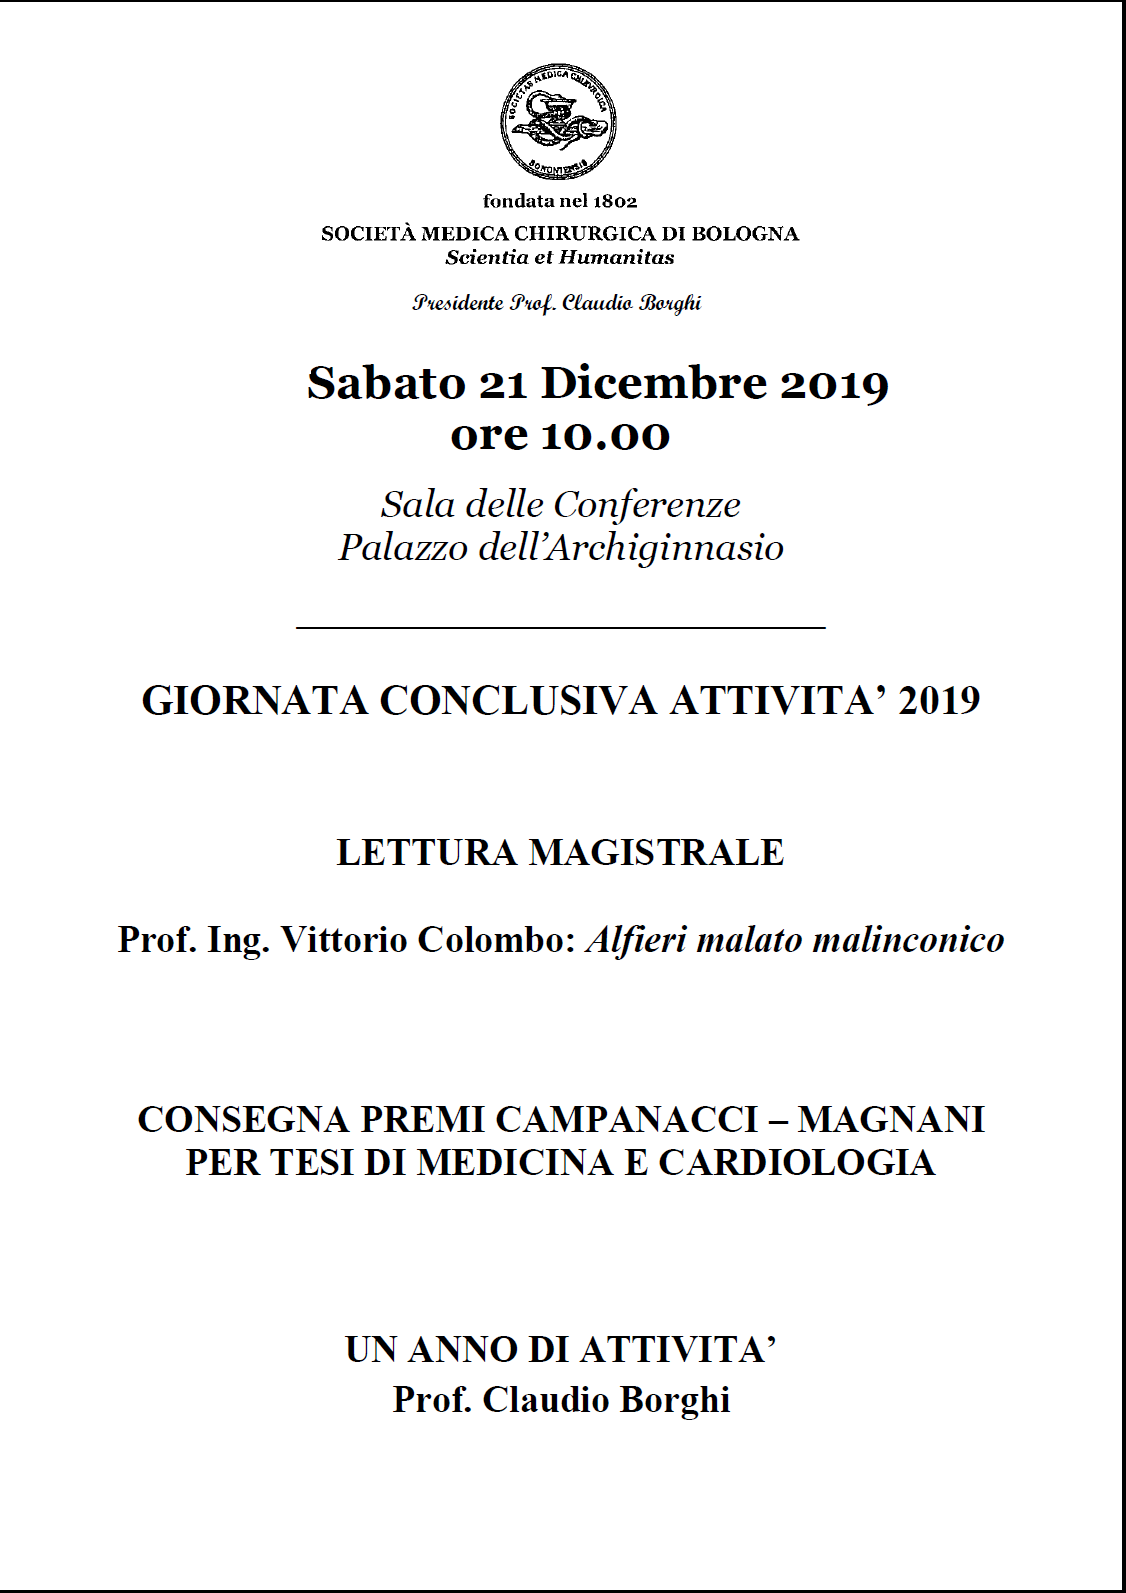 Società Medica Chirurgica di Bologna Scientia et Humanitas - Giornata conclusiva attività 2019